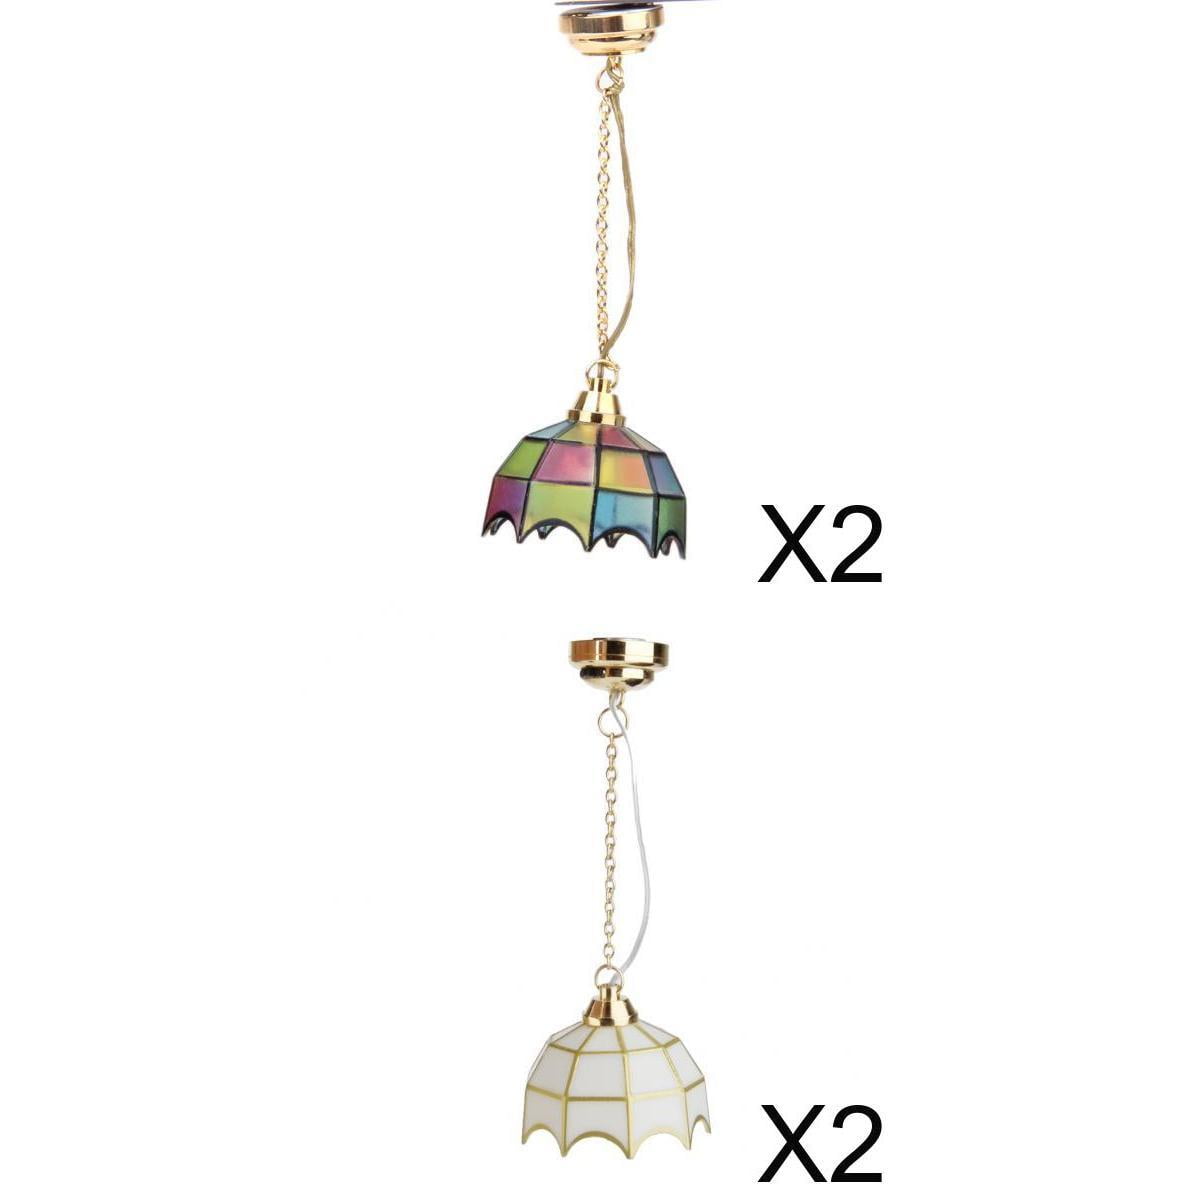 1/12 Scale Dollhouse Miniature LED Ceiling Light Chandelier Decor Accessories, 